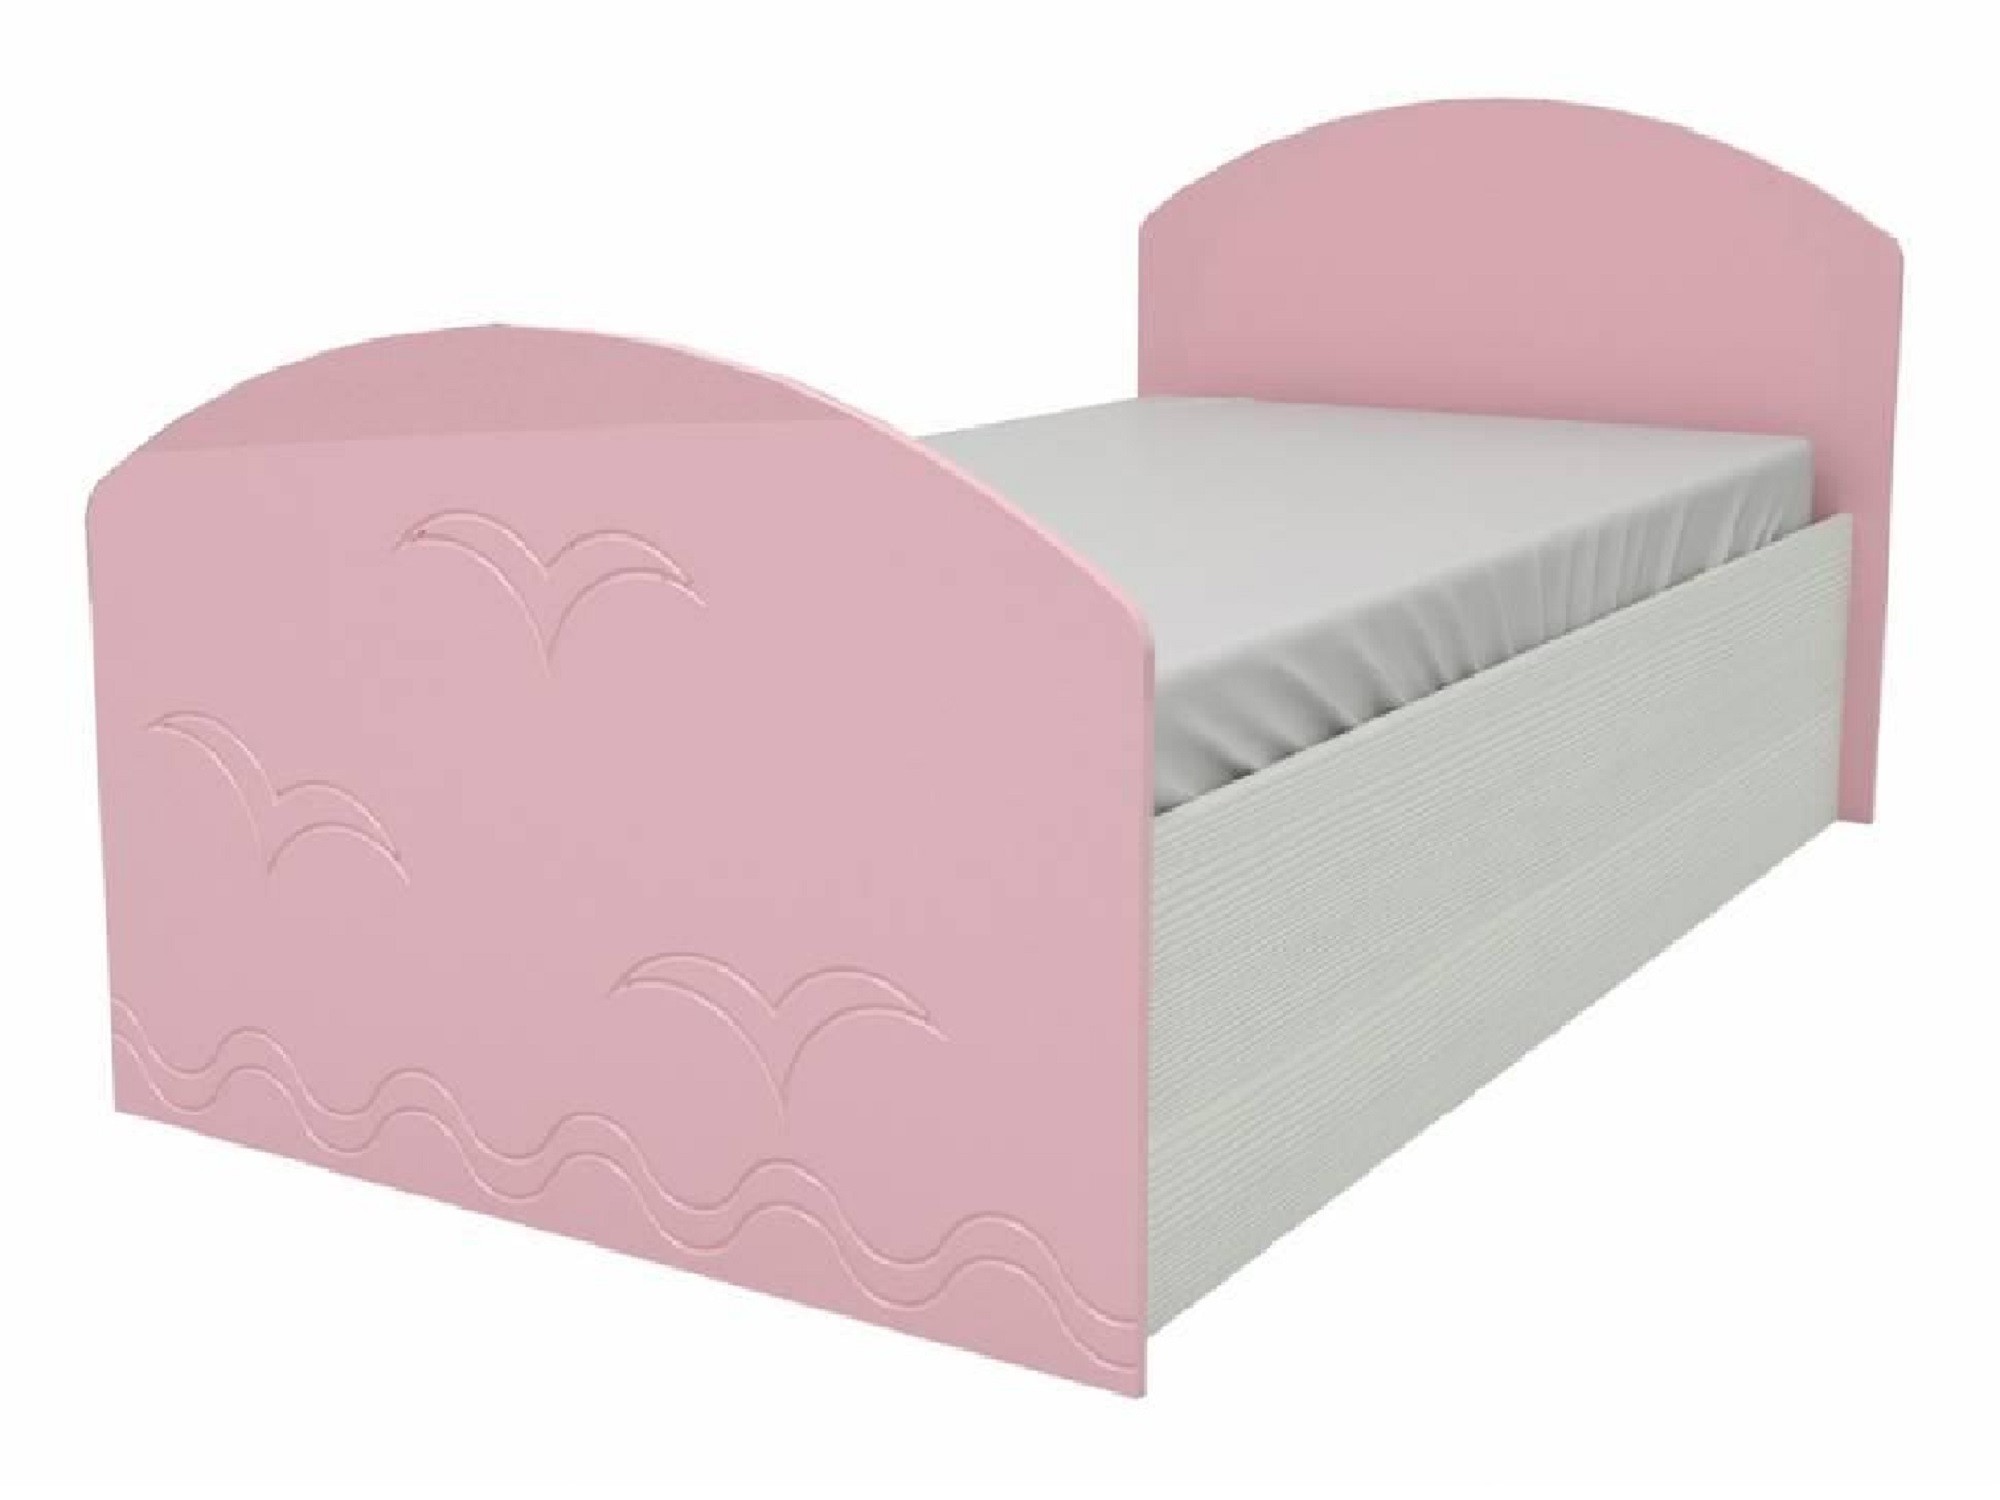 Юниор-2 Детская кровать 80, металлик (Розовый металлик, Дуб белёный) Дуб белёный, МДФ, ЛДСП юниор 2 стенка матовый розовый дуб белёный розовый мдф лдсп